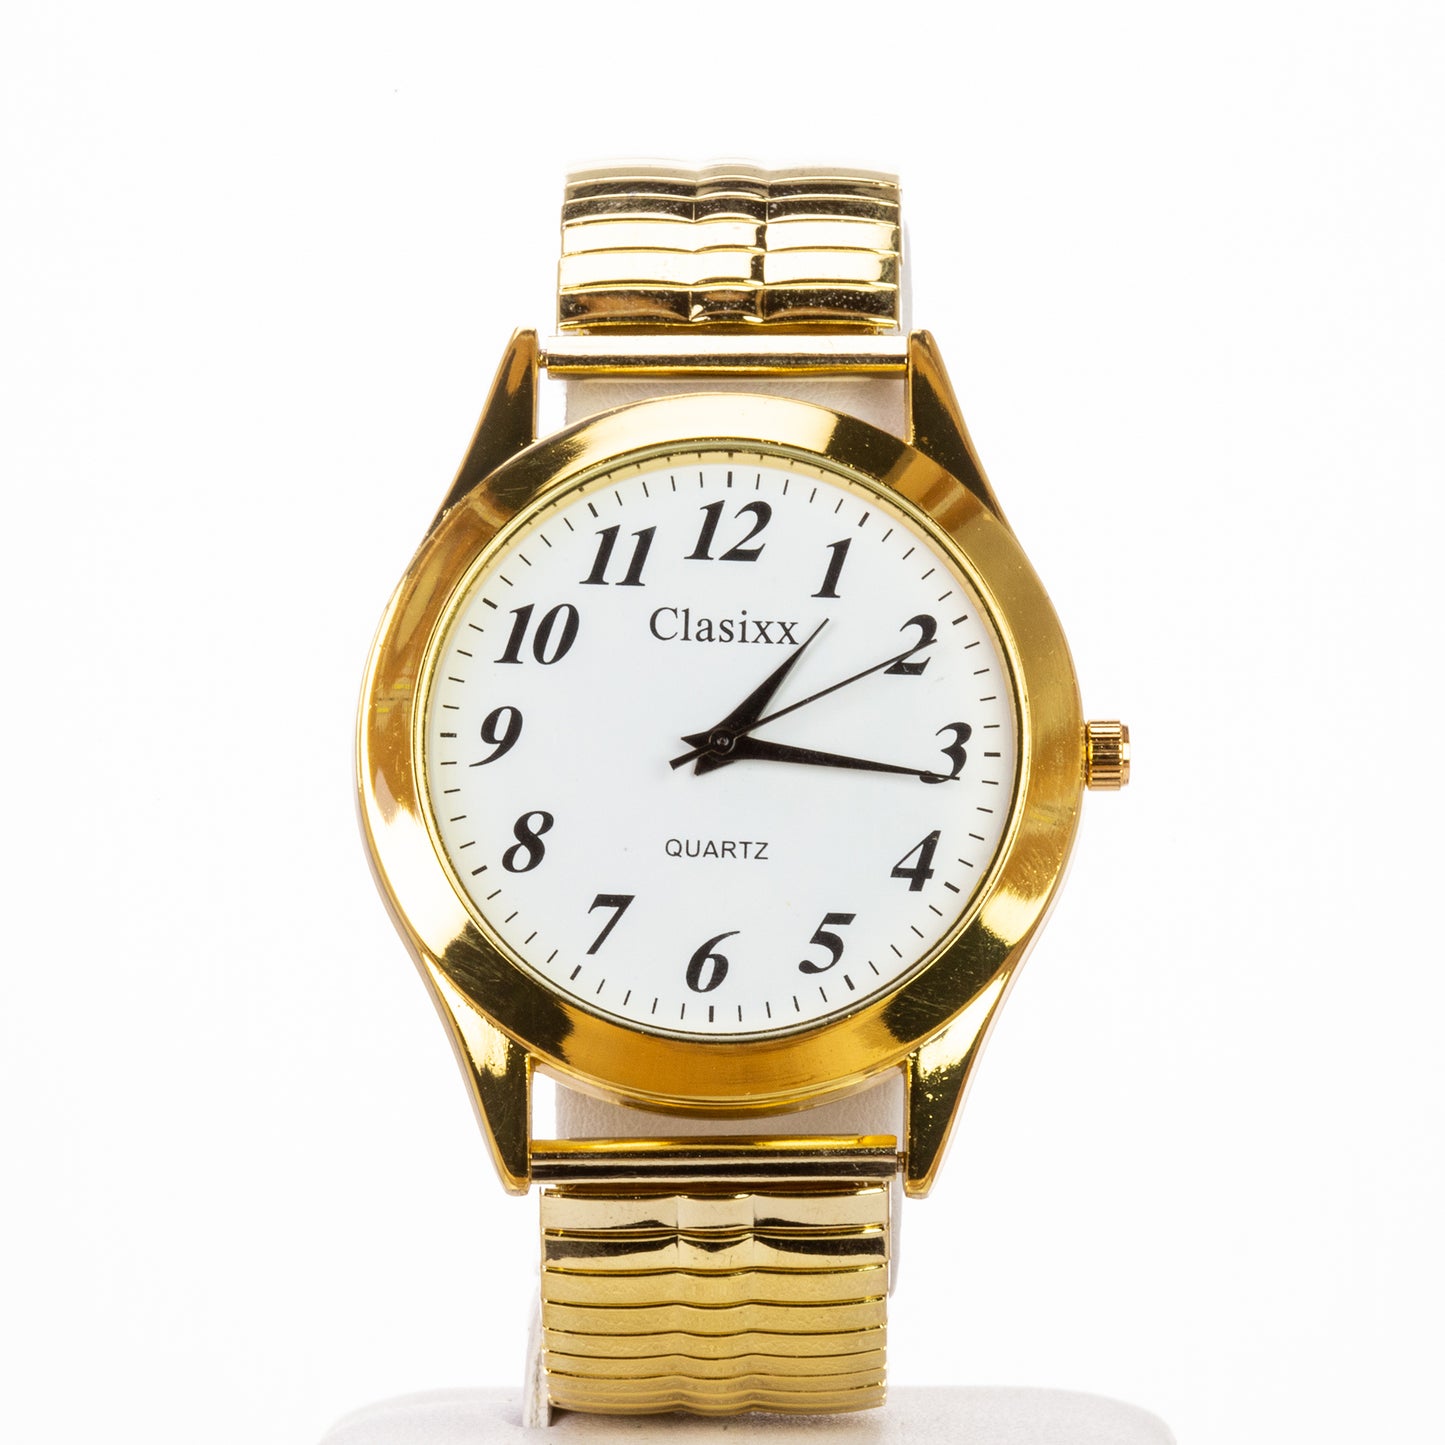 Classix pánské hodinky s řemínkem z nerezové oceli a vysoce kvalitním strojkem, ve zlaté barvě